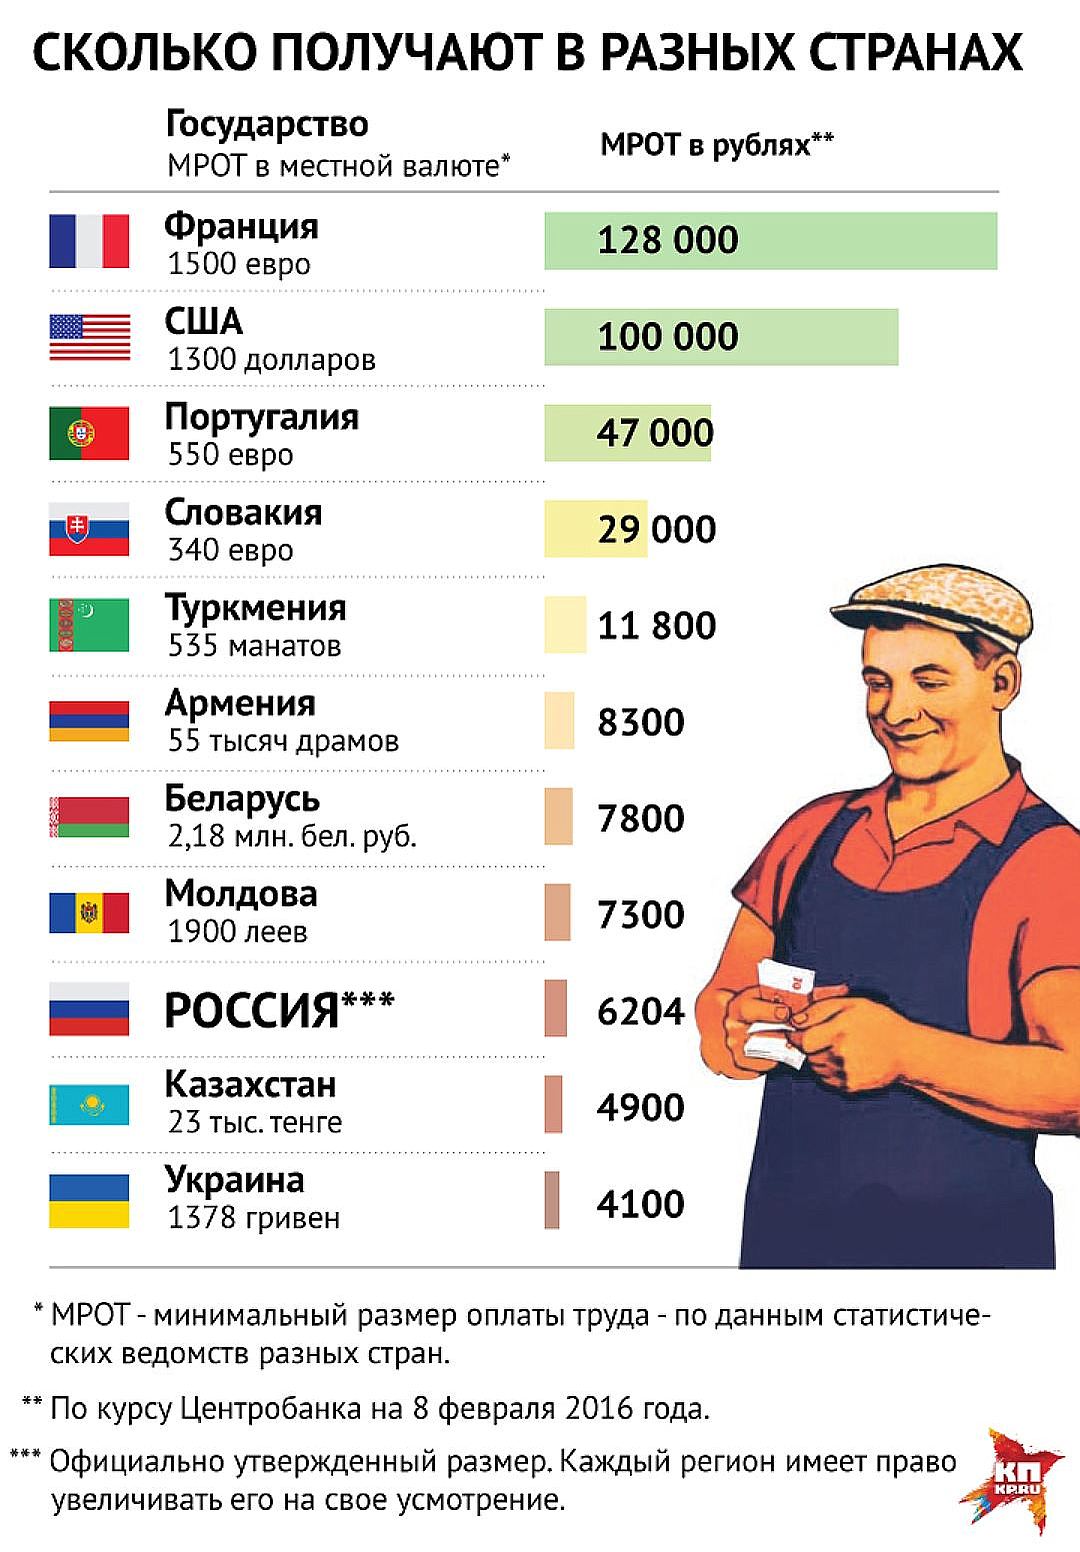 Средняя зарплата в россии в месяц. Зарплата. Минимальная заплата в Росси. Зарплаты в разных странах. Заработные платы в России.